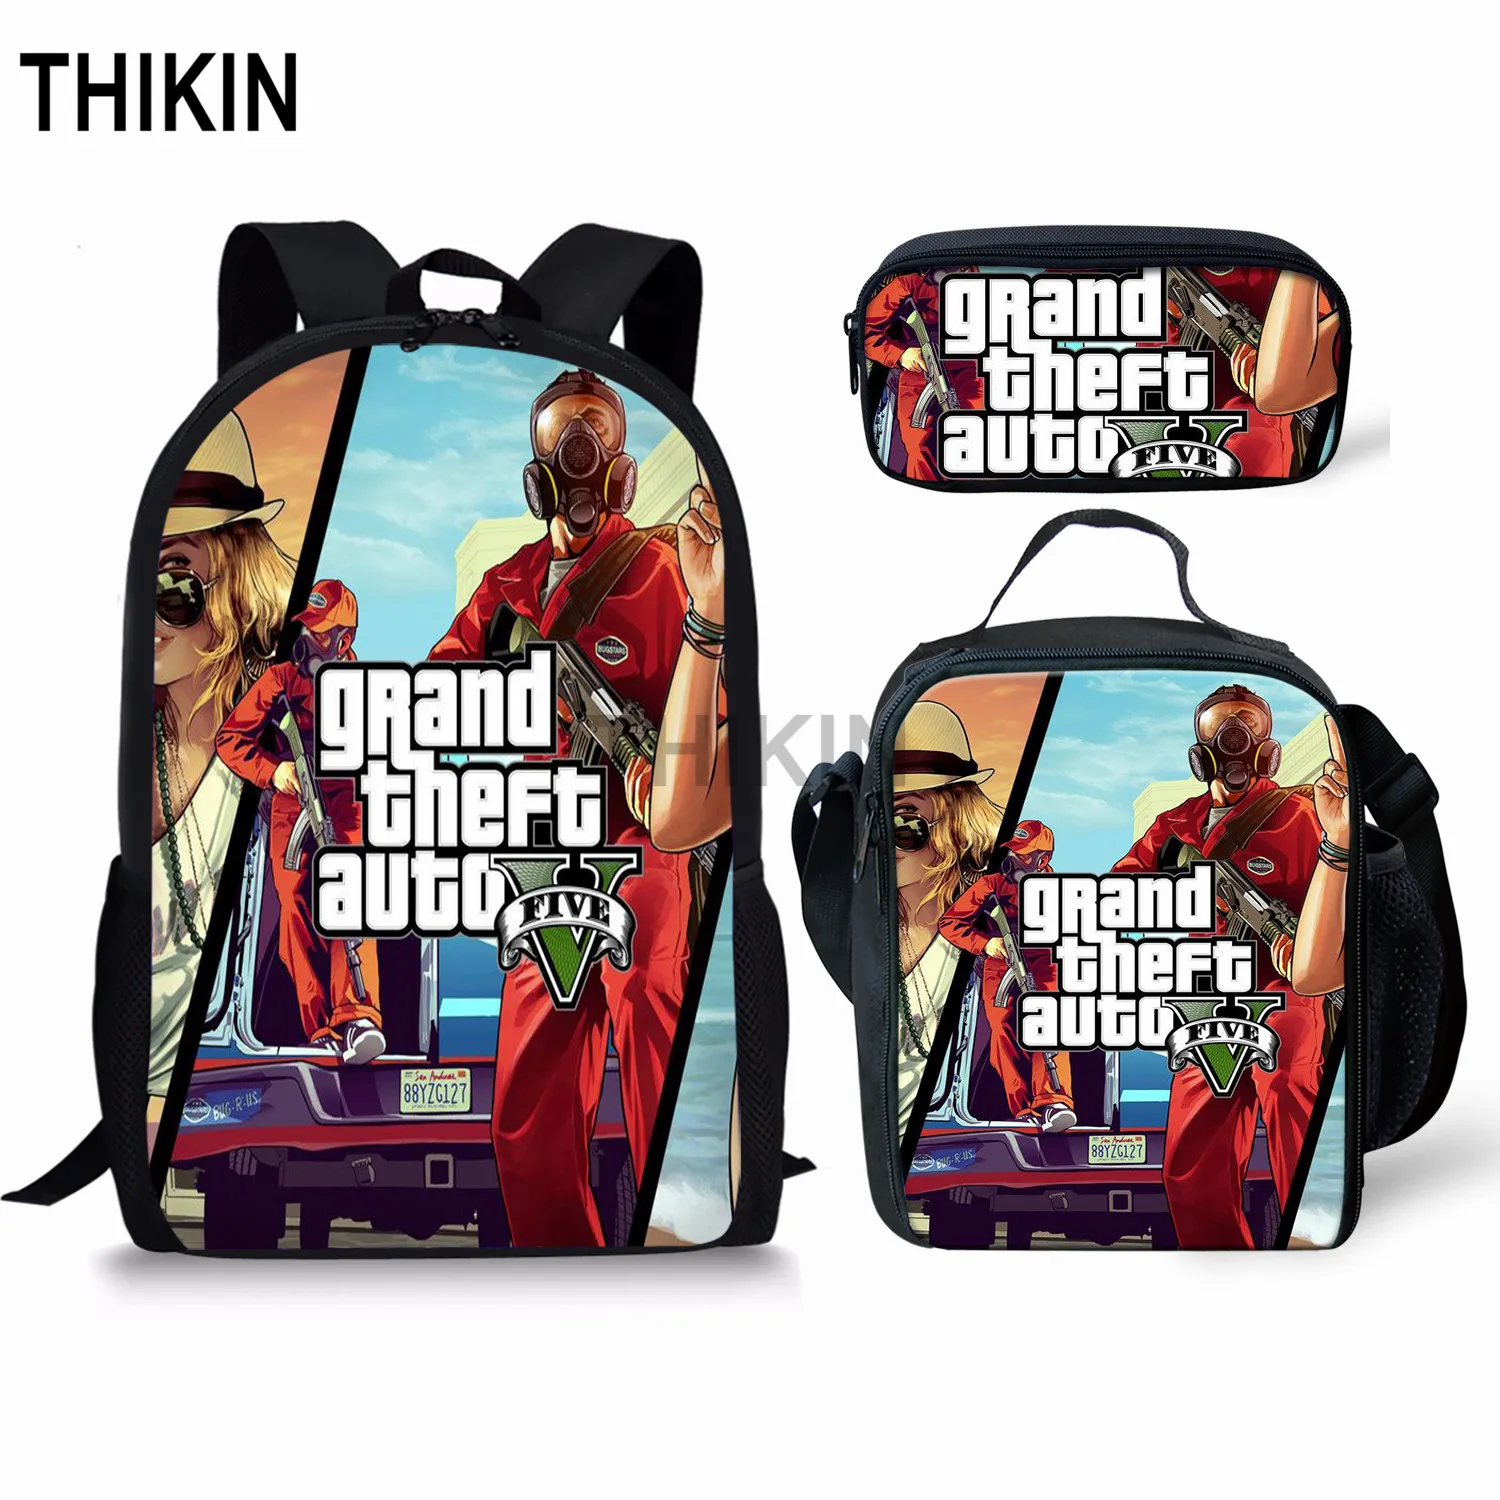 THIKIN Grand Theft Auto школьные сумки для подростков мальчиков 3 шт./компл. сумки на плечо крутая игра GTA рюкзак комплект для детей; обувь для девочек; обувь для студентов; Mochila - Цвет: as picture